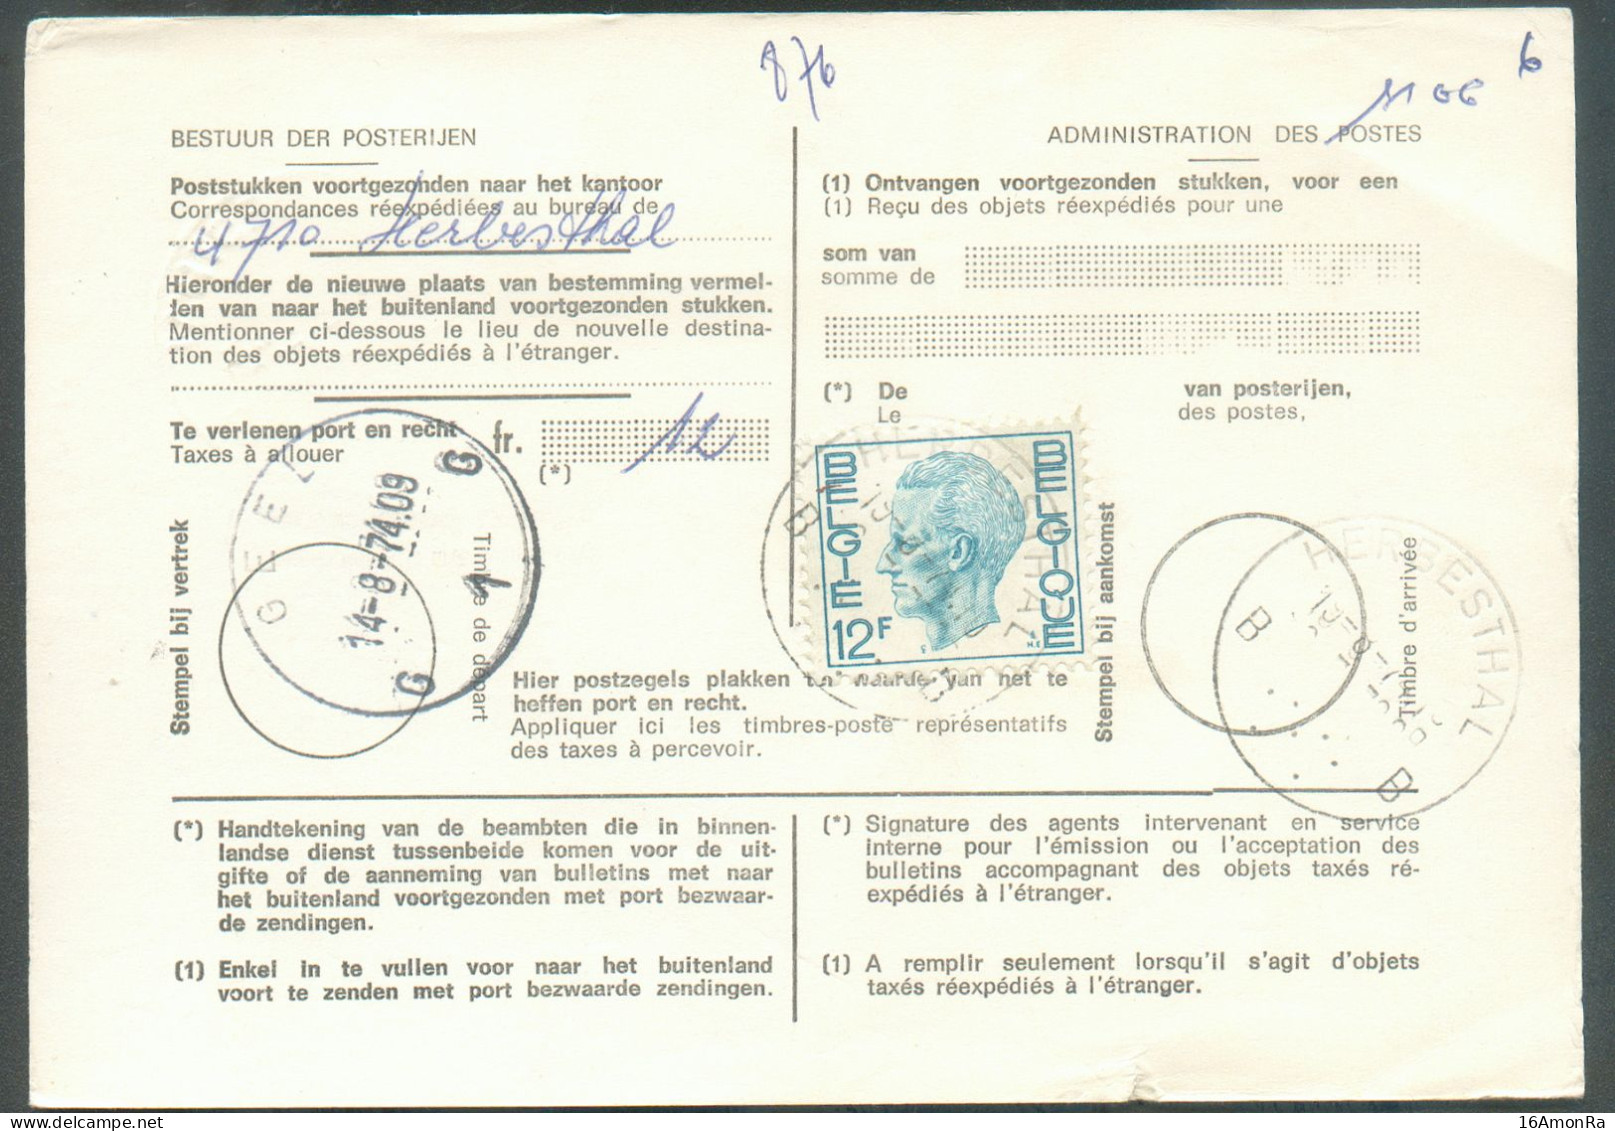 N°1648 - 12 Franc BAUDOUIN ELSTROEM  Oblitéré Sc HERBESTHAL 14-8-1974  Sur Carte (type)965  Bon N°7463-1969 Pour TAXE DE - Lettres & Documents